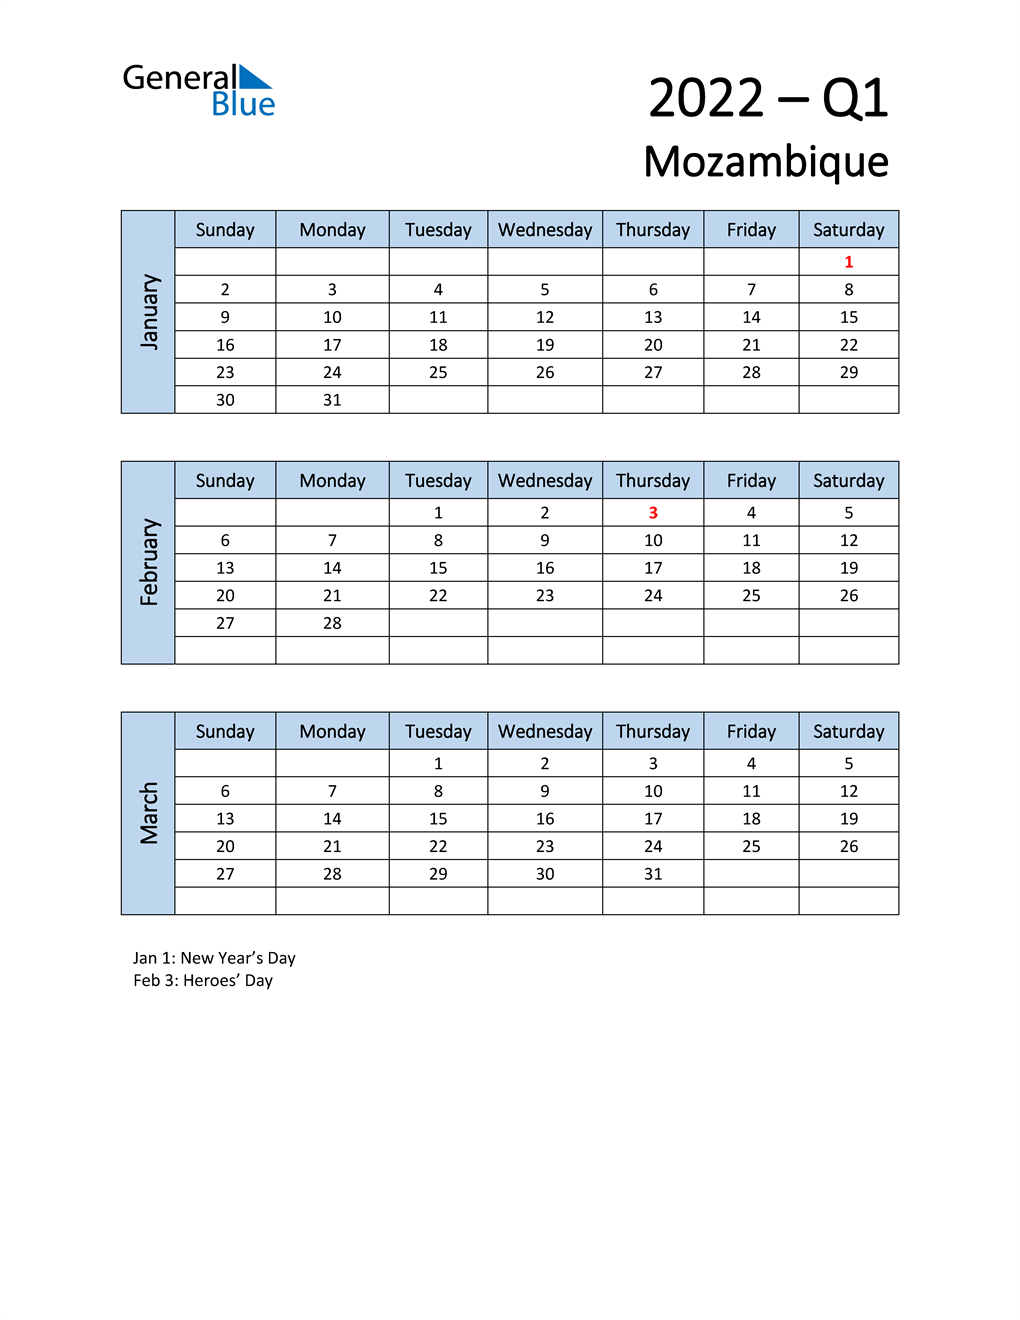  Free Q1 2022 Calendar for Mozambique